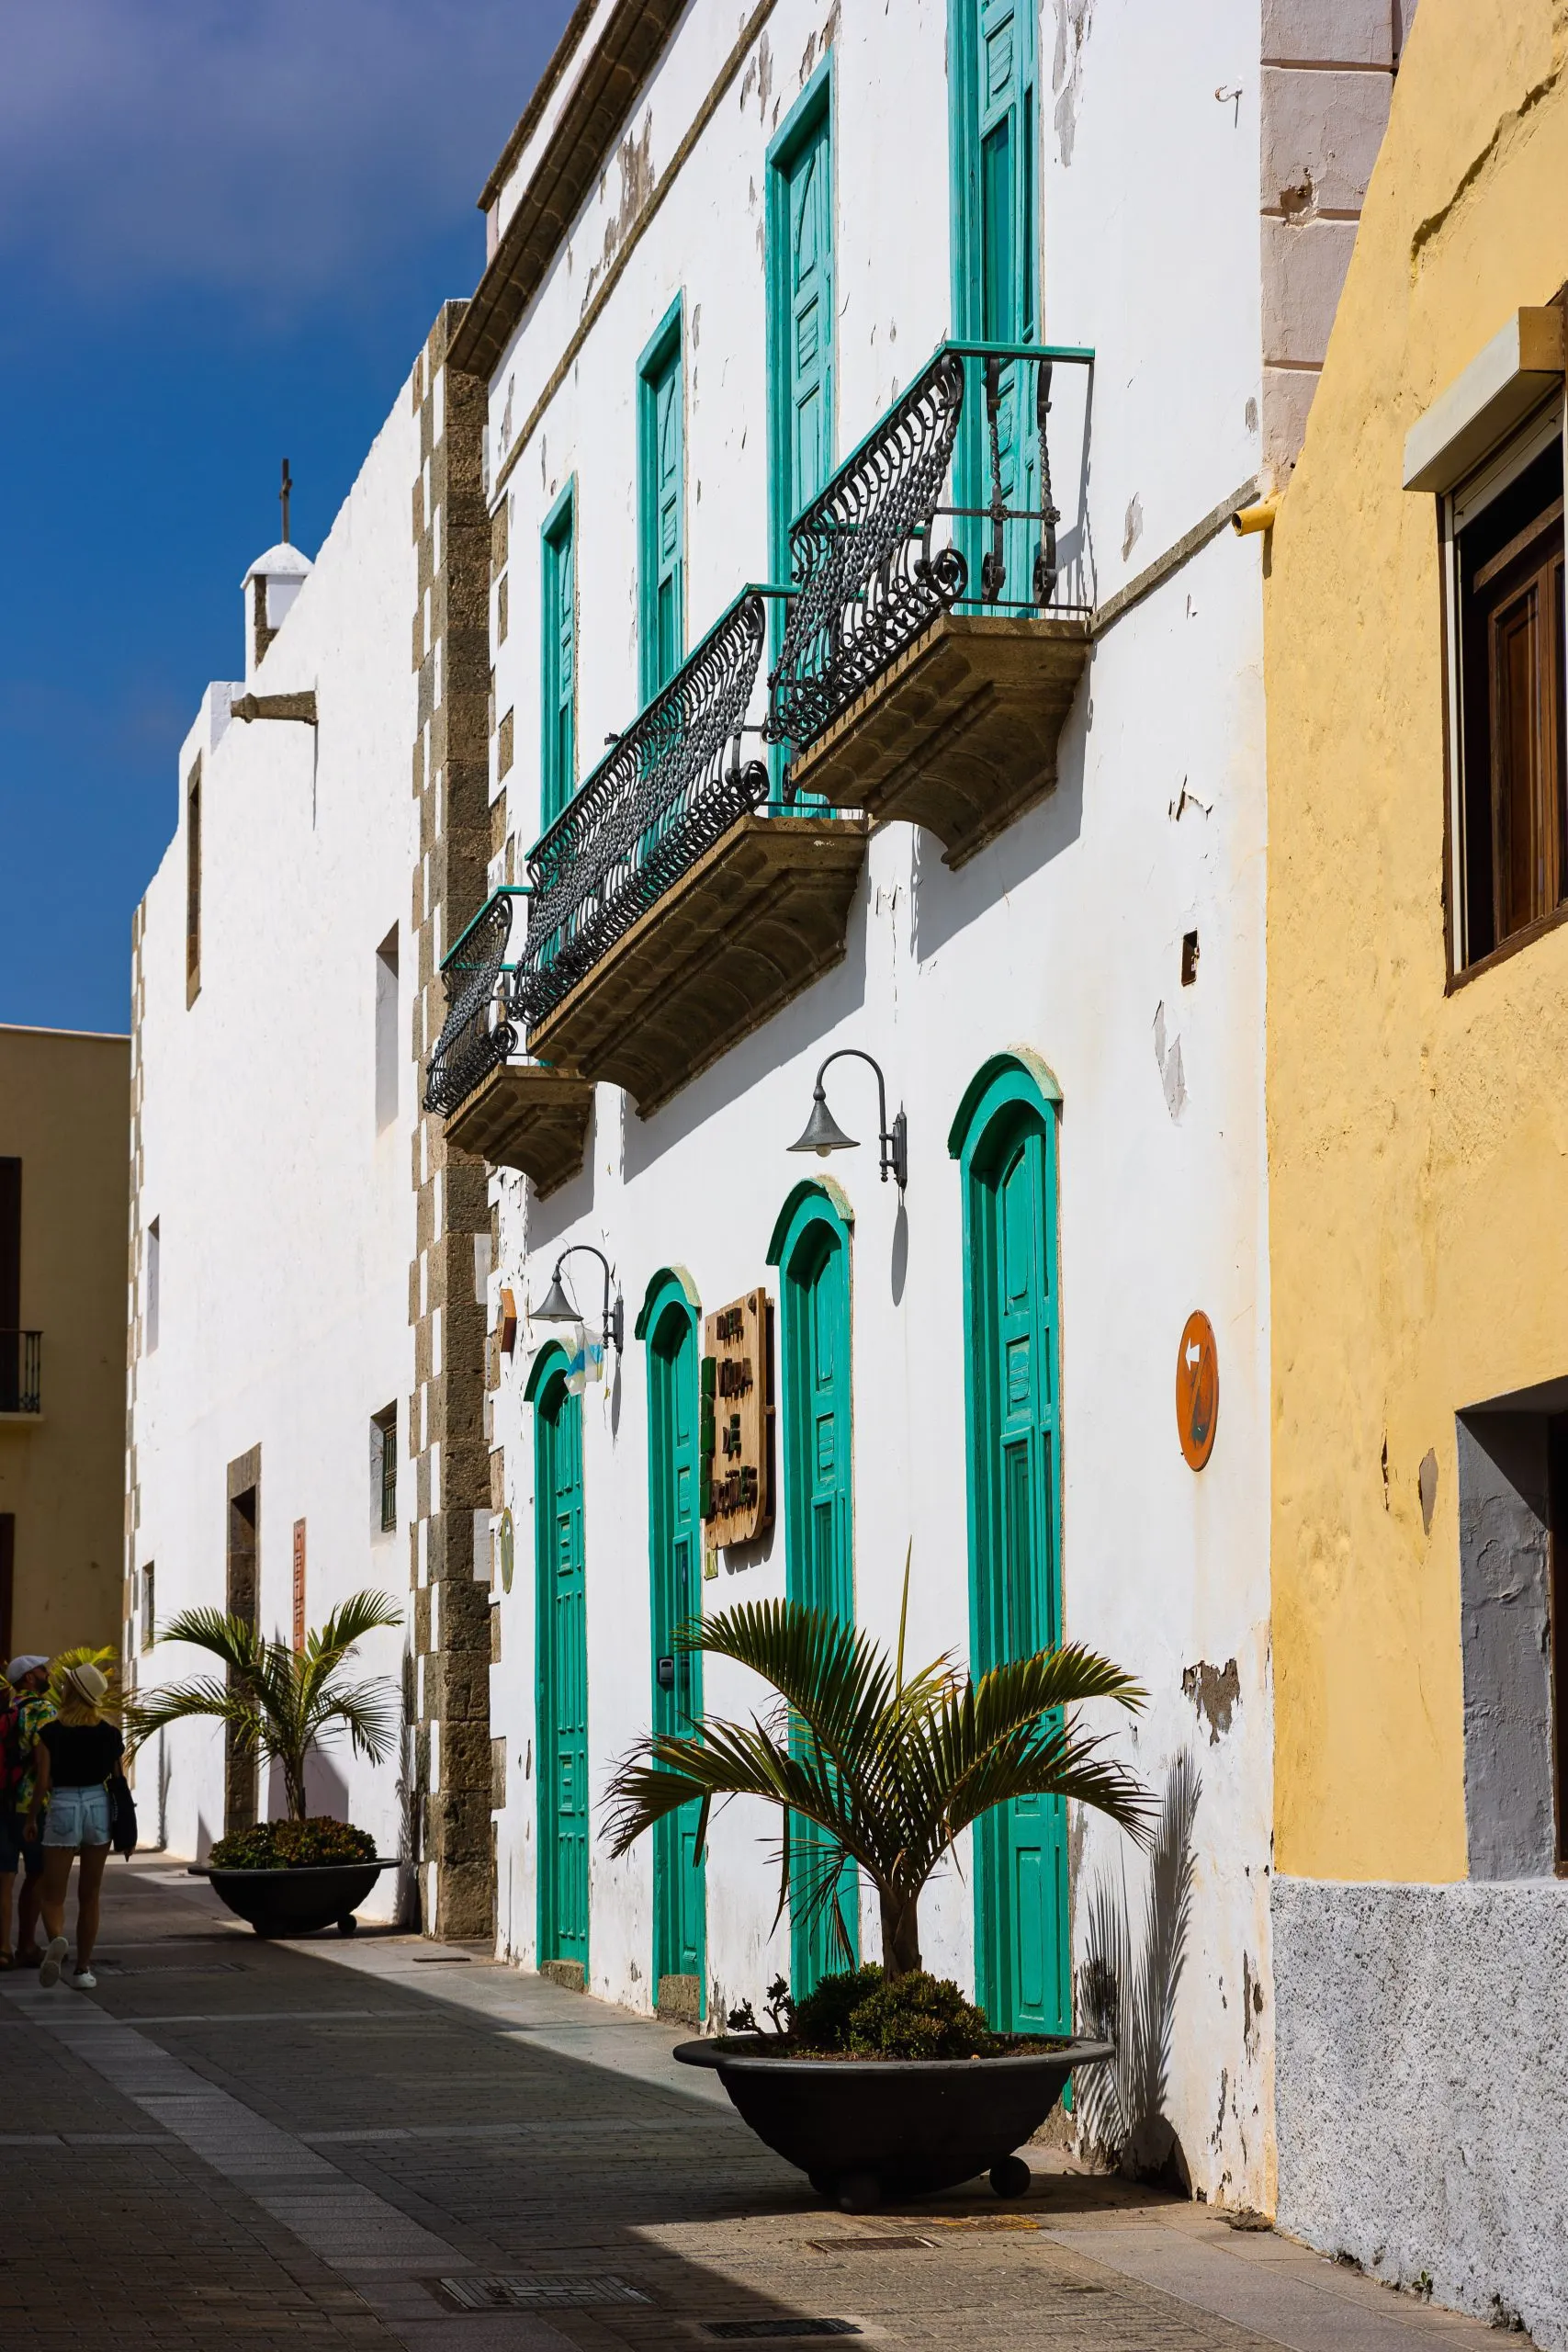 strada acciottolata, vecchie case con balconi tradizionali nel centro storico di Agüimes, Gran Canaria, Spagna.